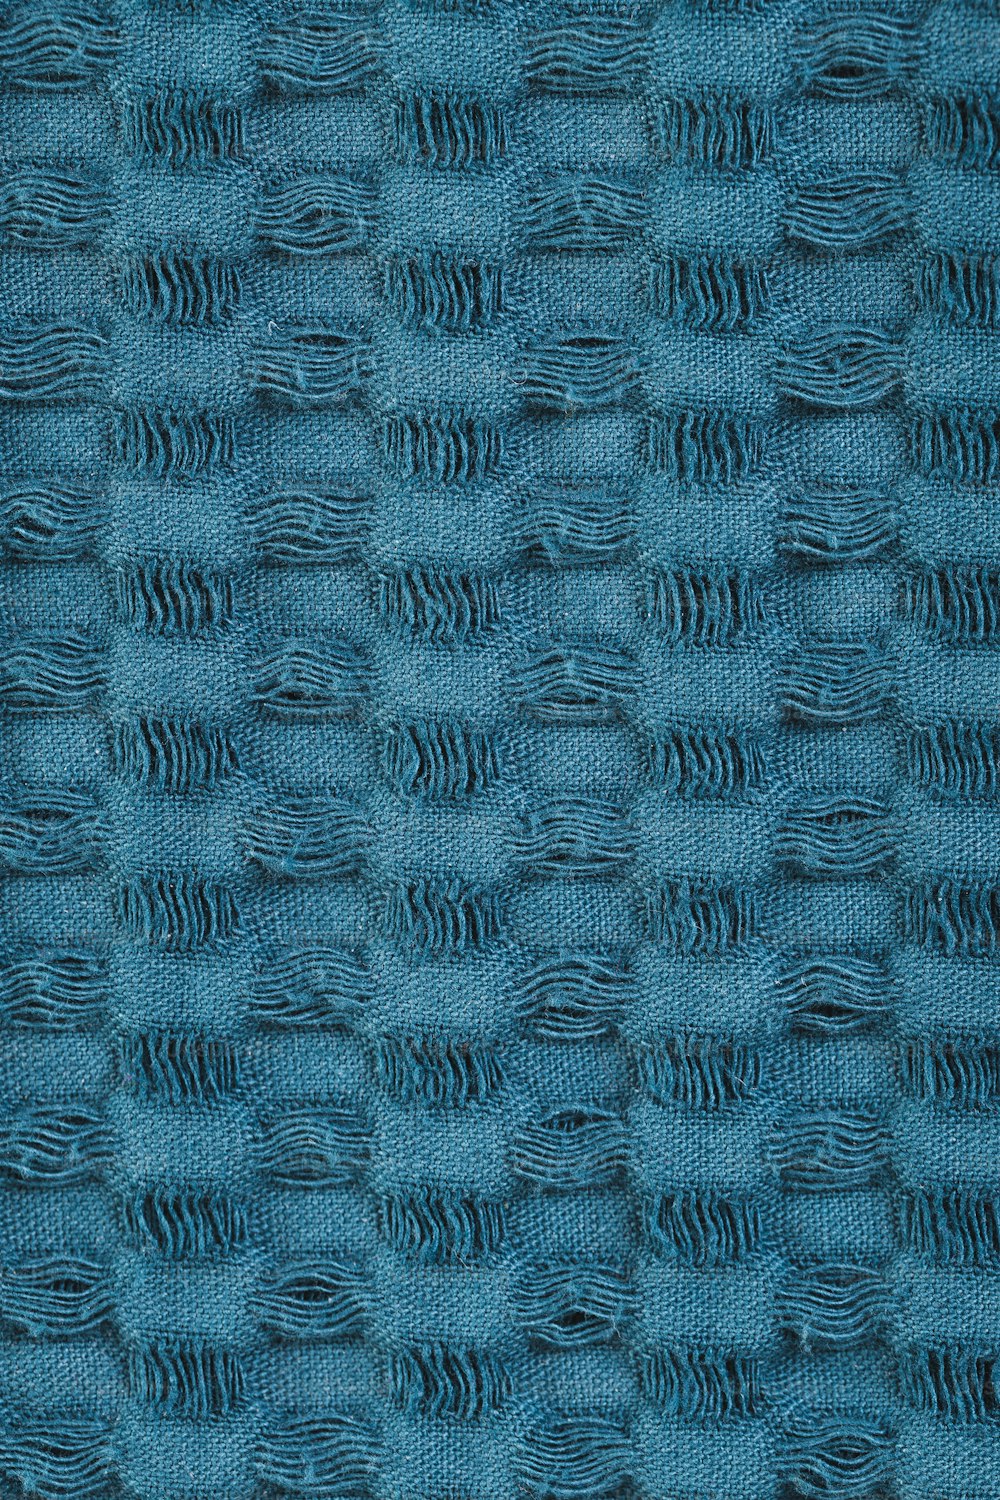 um close up de uma textura de tecido azul